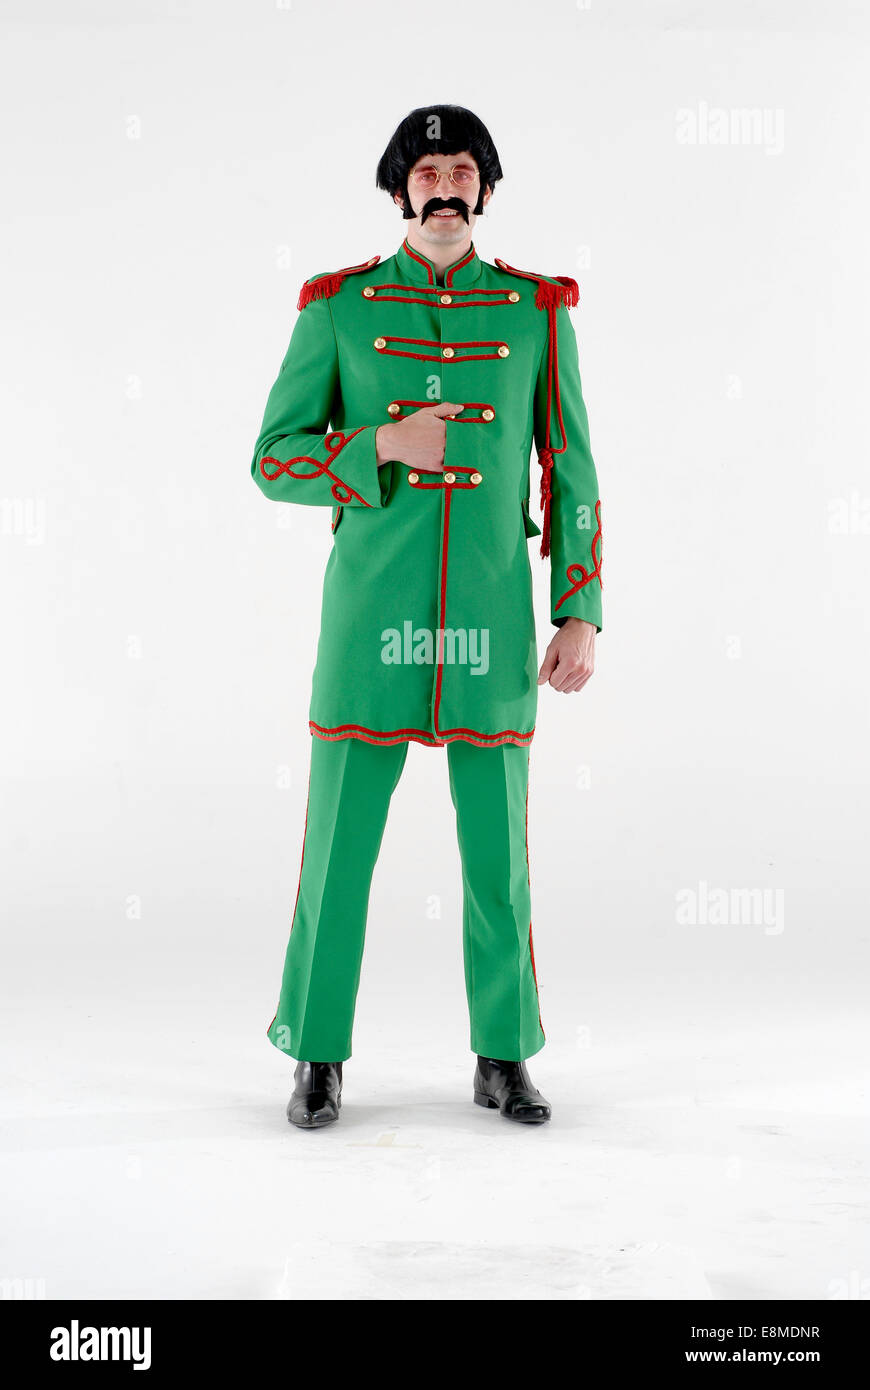 Uomo in costume costume di commedia in Sargent peperoni abbigliamento militare come i Beatles dalla loro famosa copertina album Foto Stock